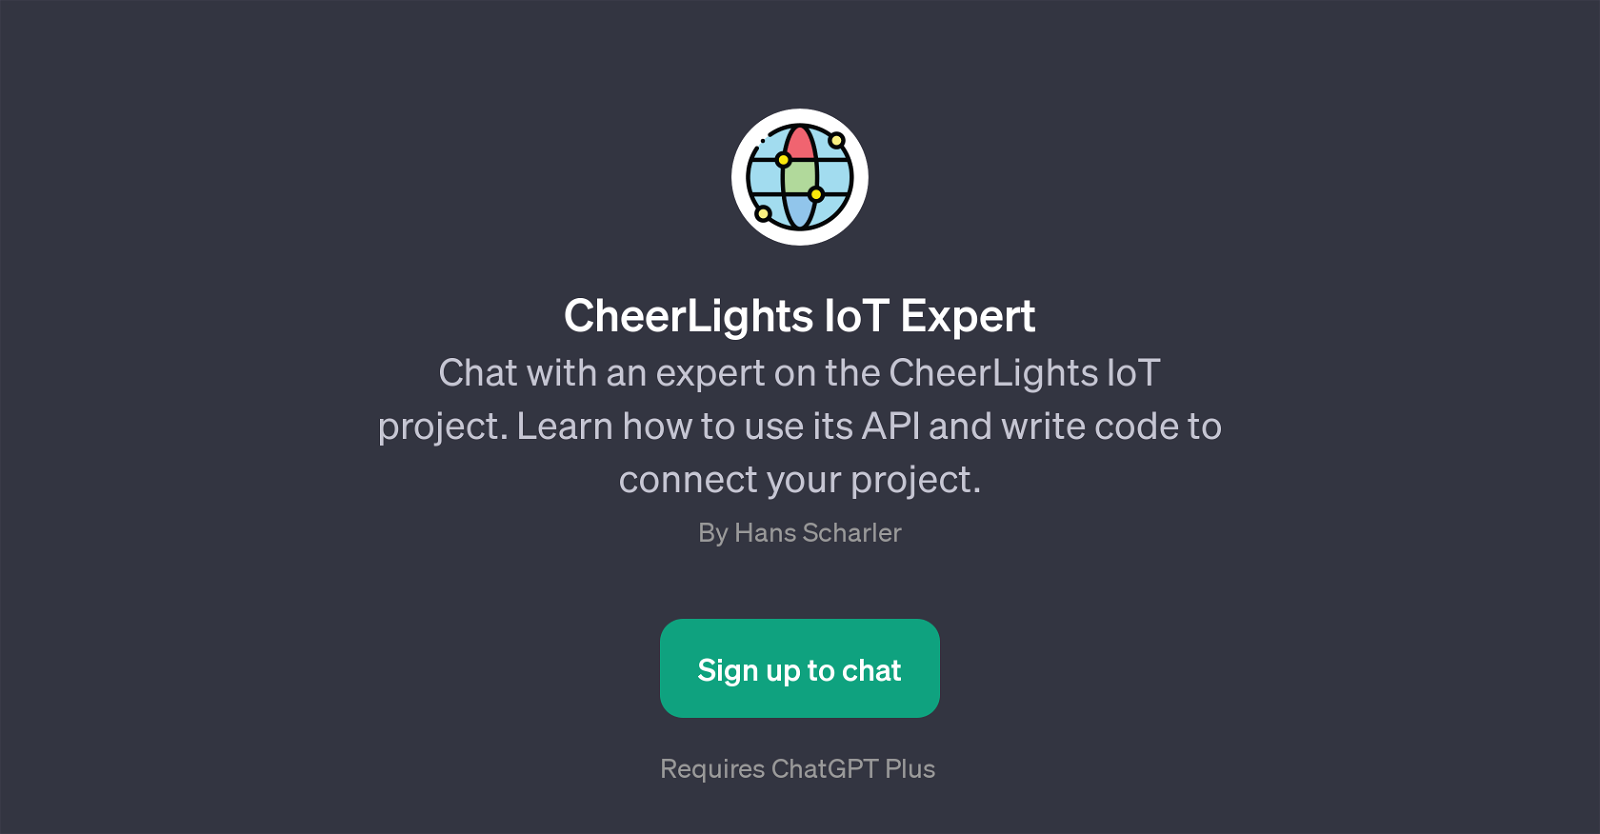 CheerLights IoT Expert website